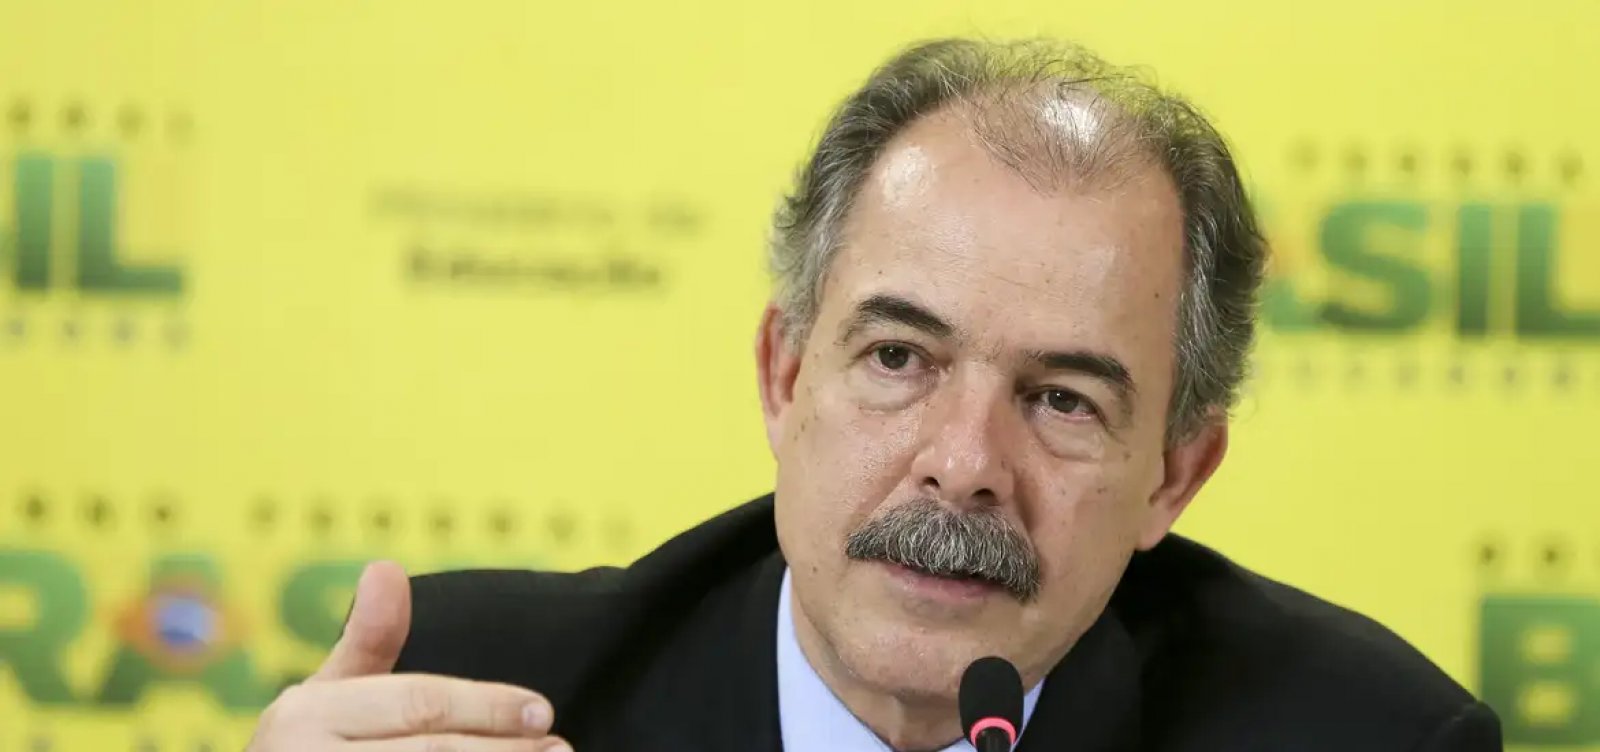 Mercadante é cotado para assumir presidência da Petrobras caso Prates seja afastado